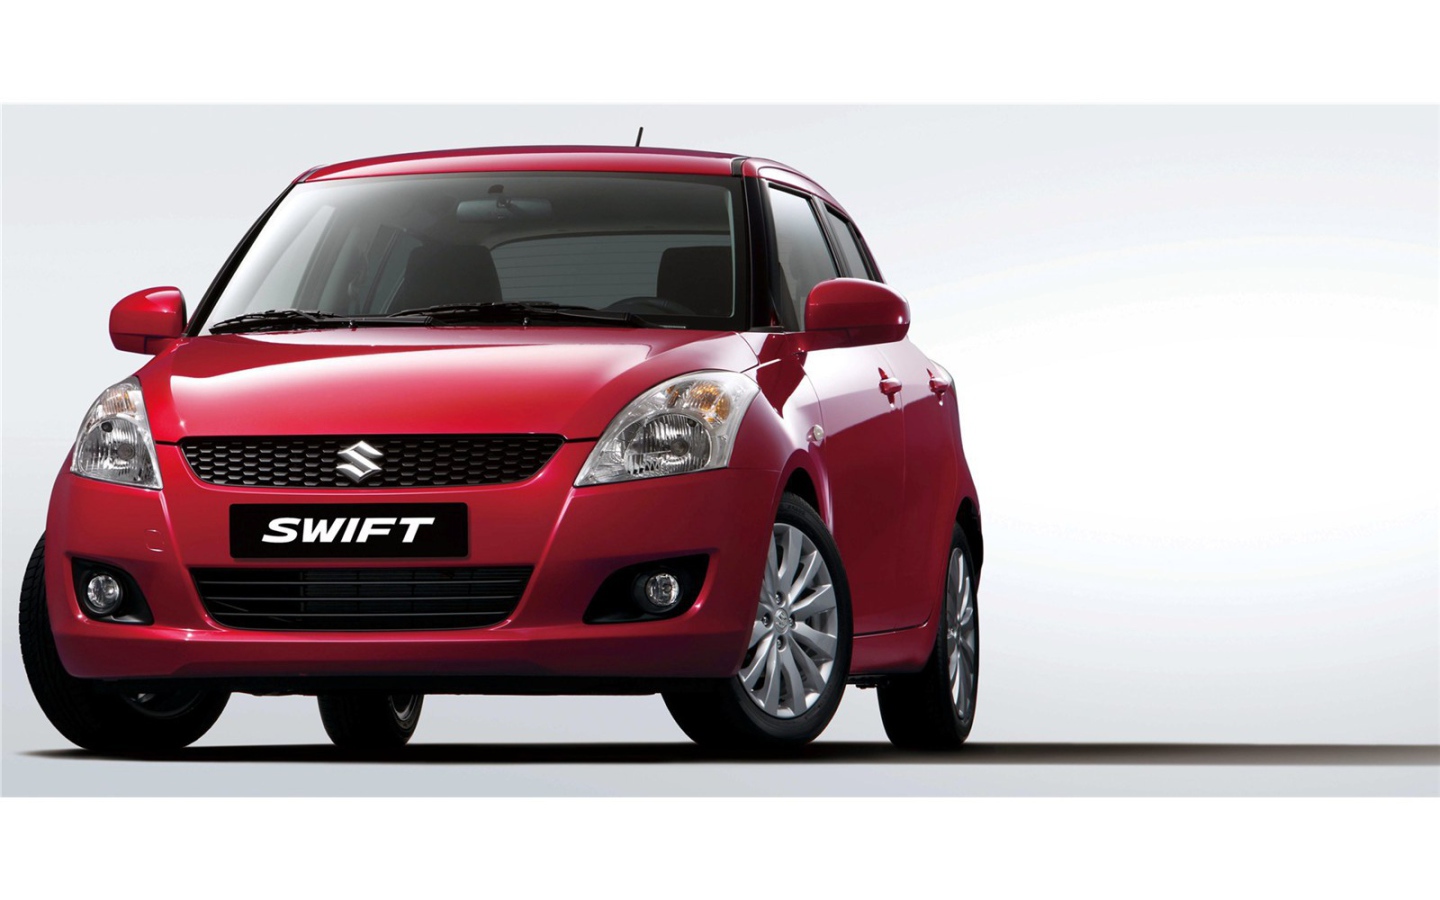 Автомобиль марки Suzuki модели Swift